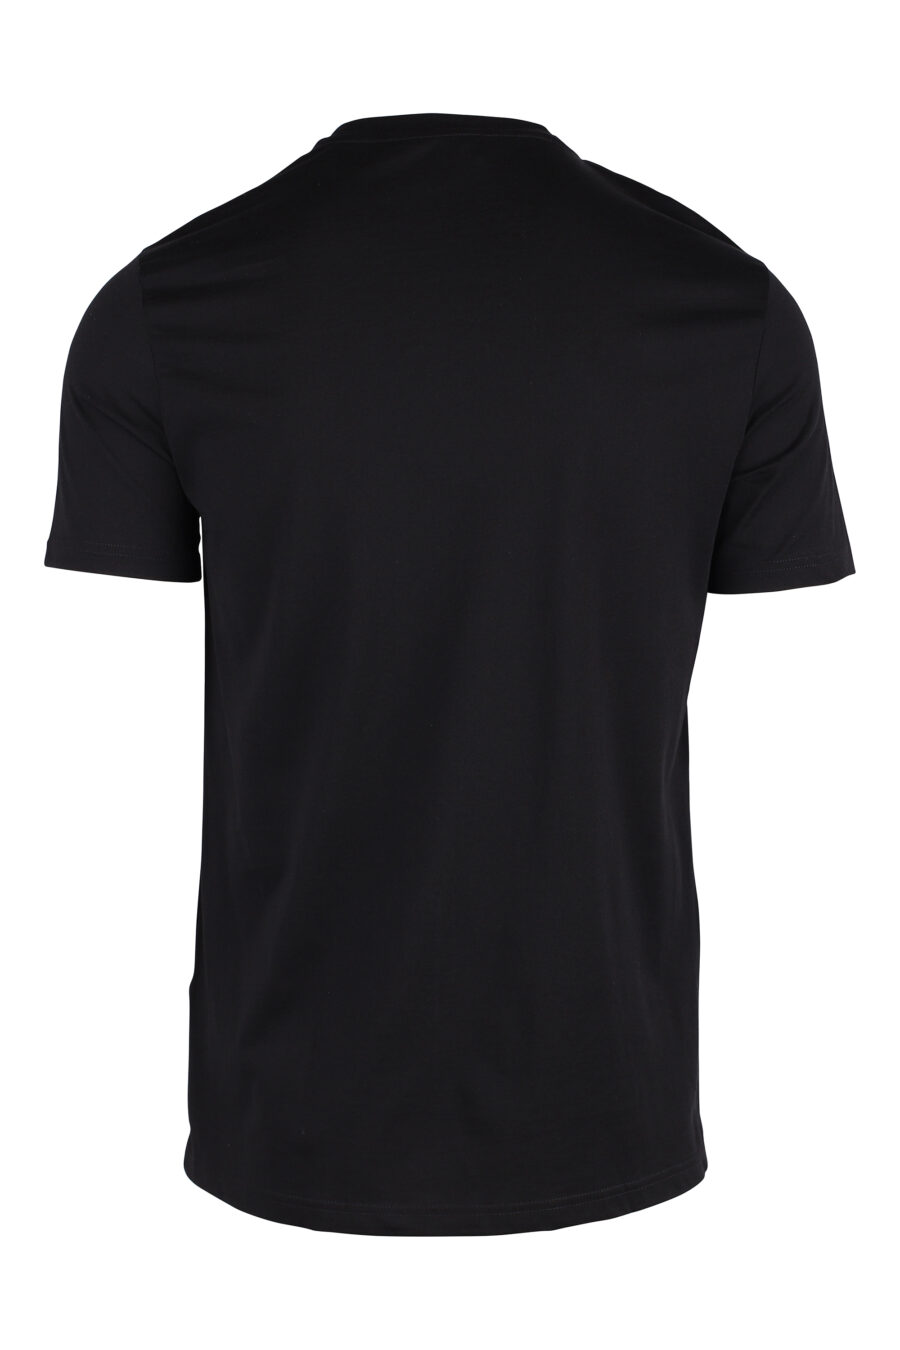 Schwarzes T-Shirt mit weißem gesticktem Logo - IMG 8564